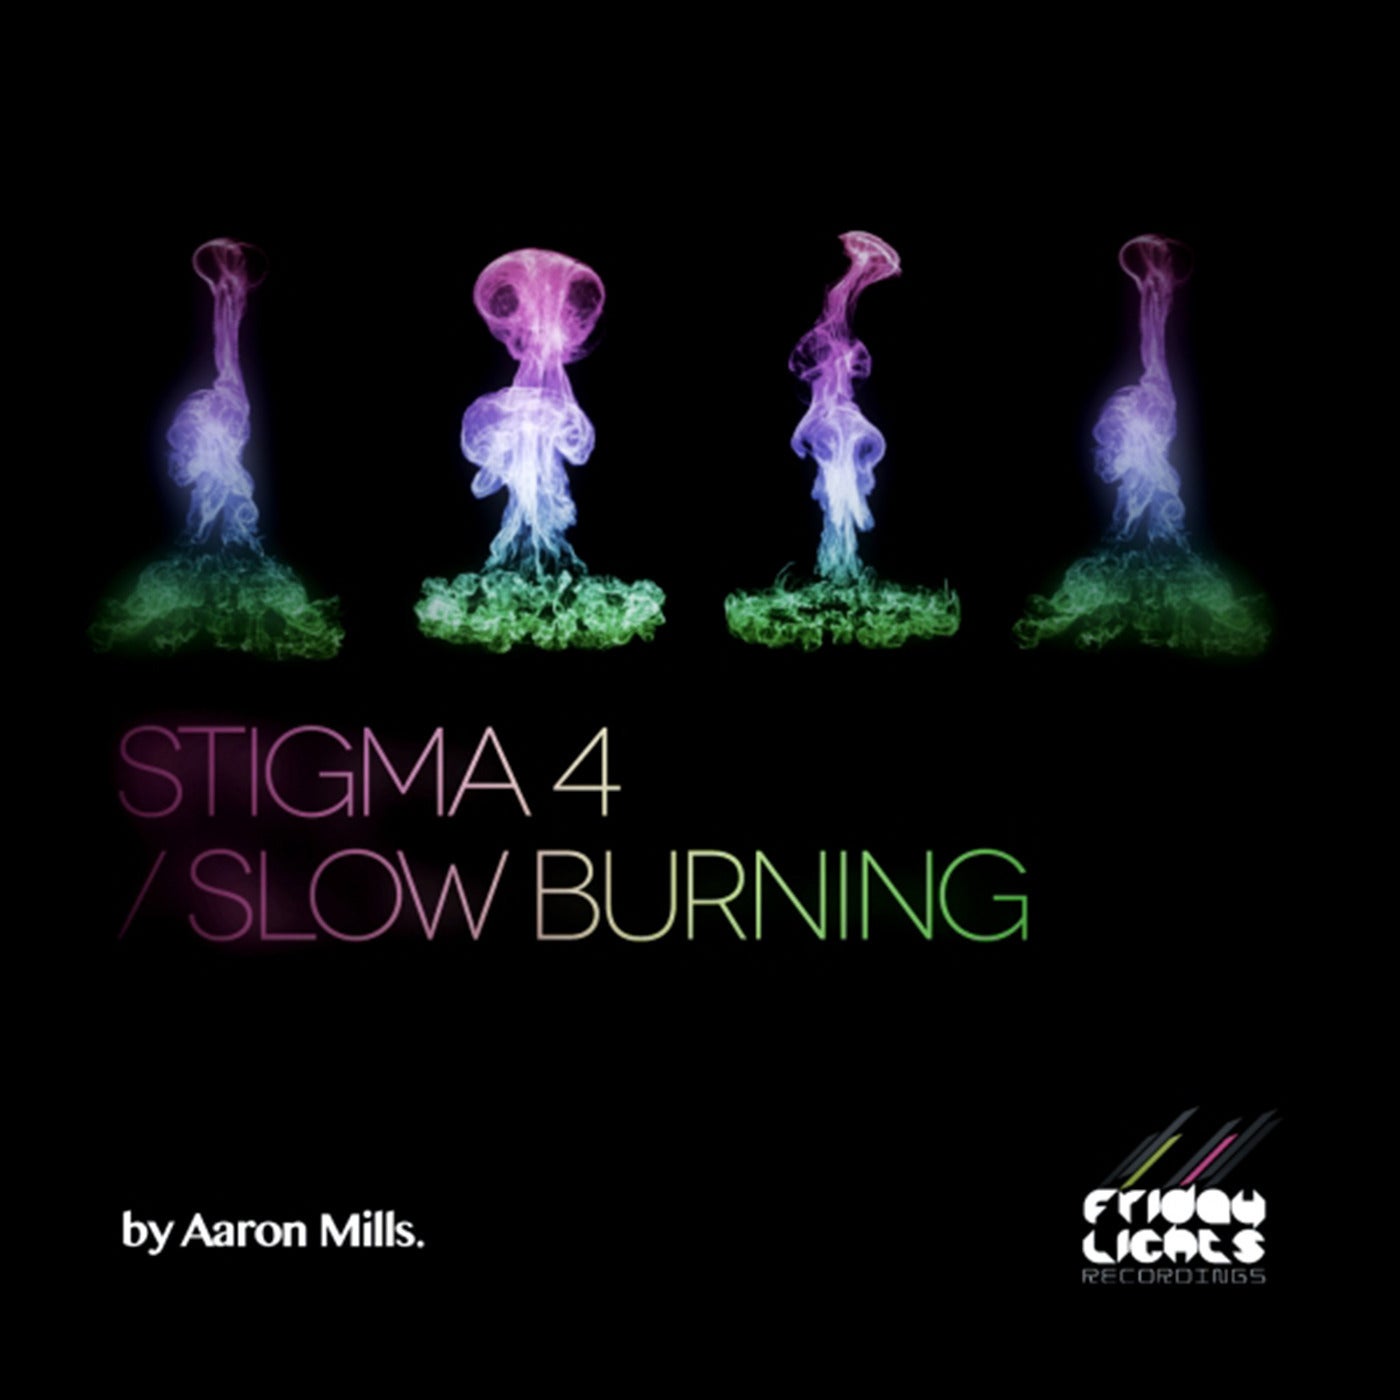 Stigma 4 / Slow Burning